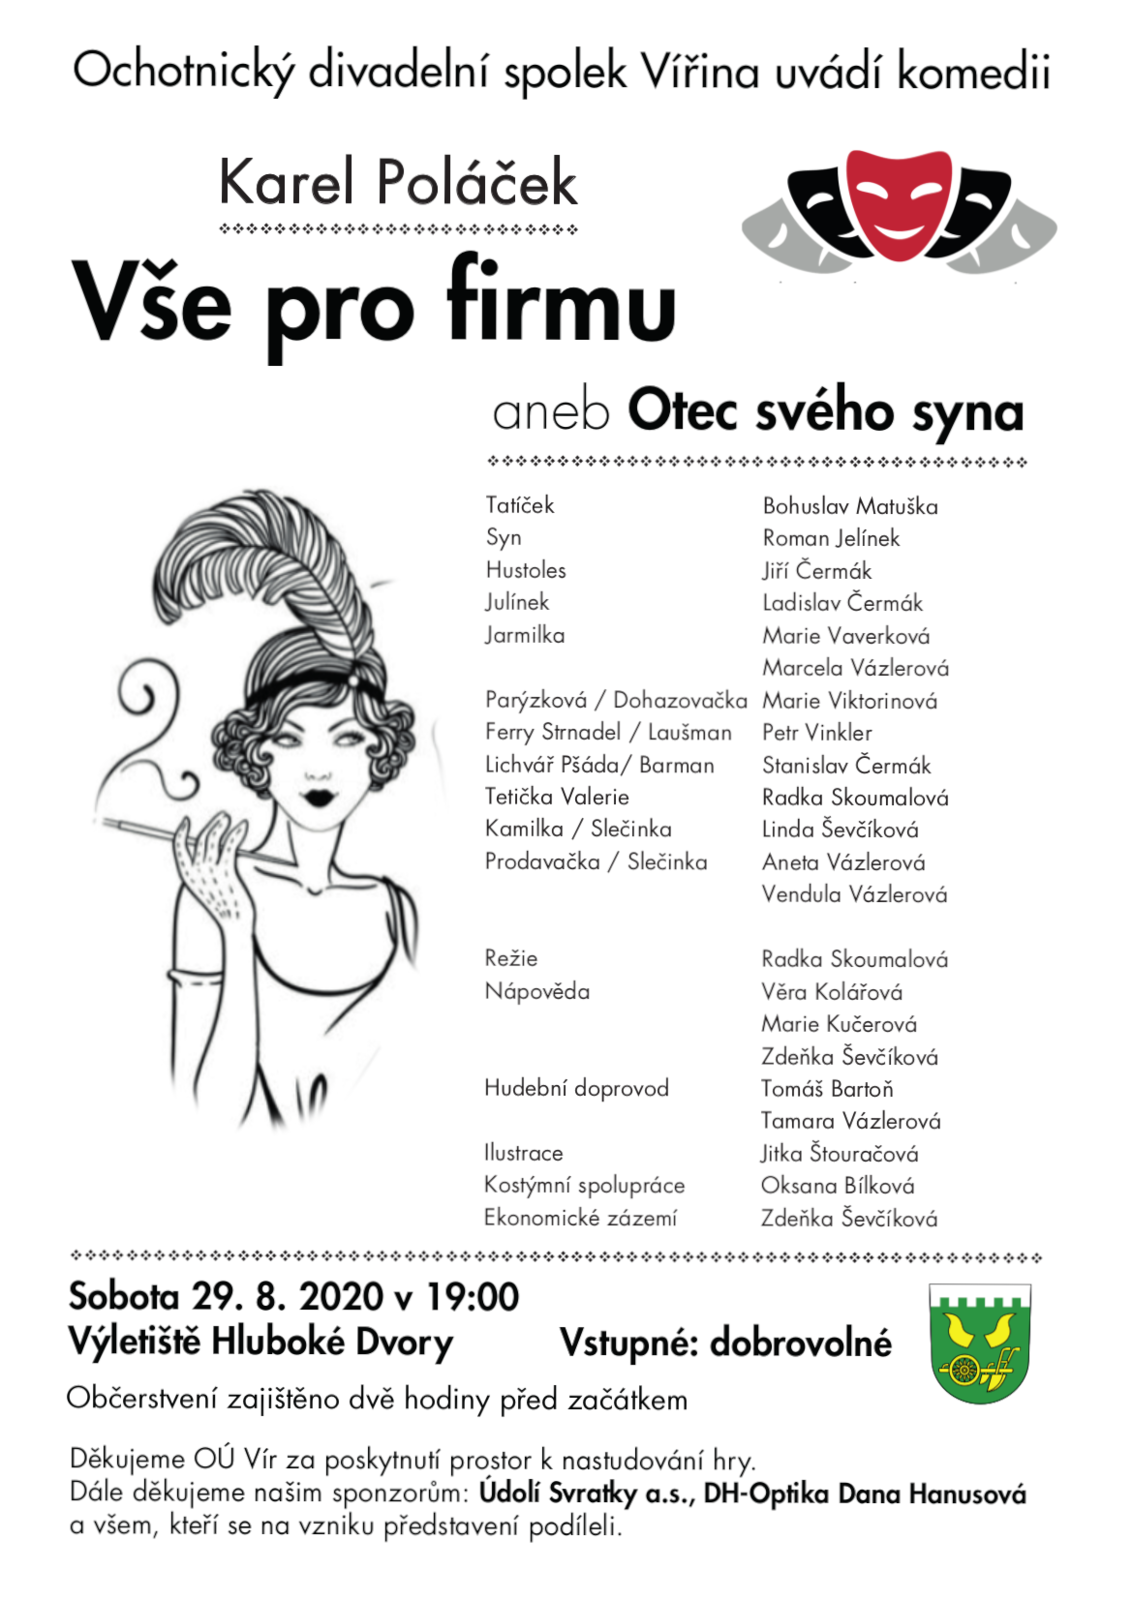 plakát divadelního představení - Vše pro firmu - sobota 27. 8. 2020